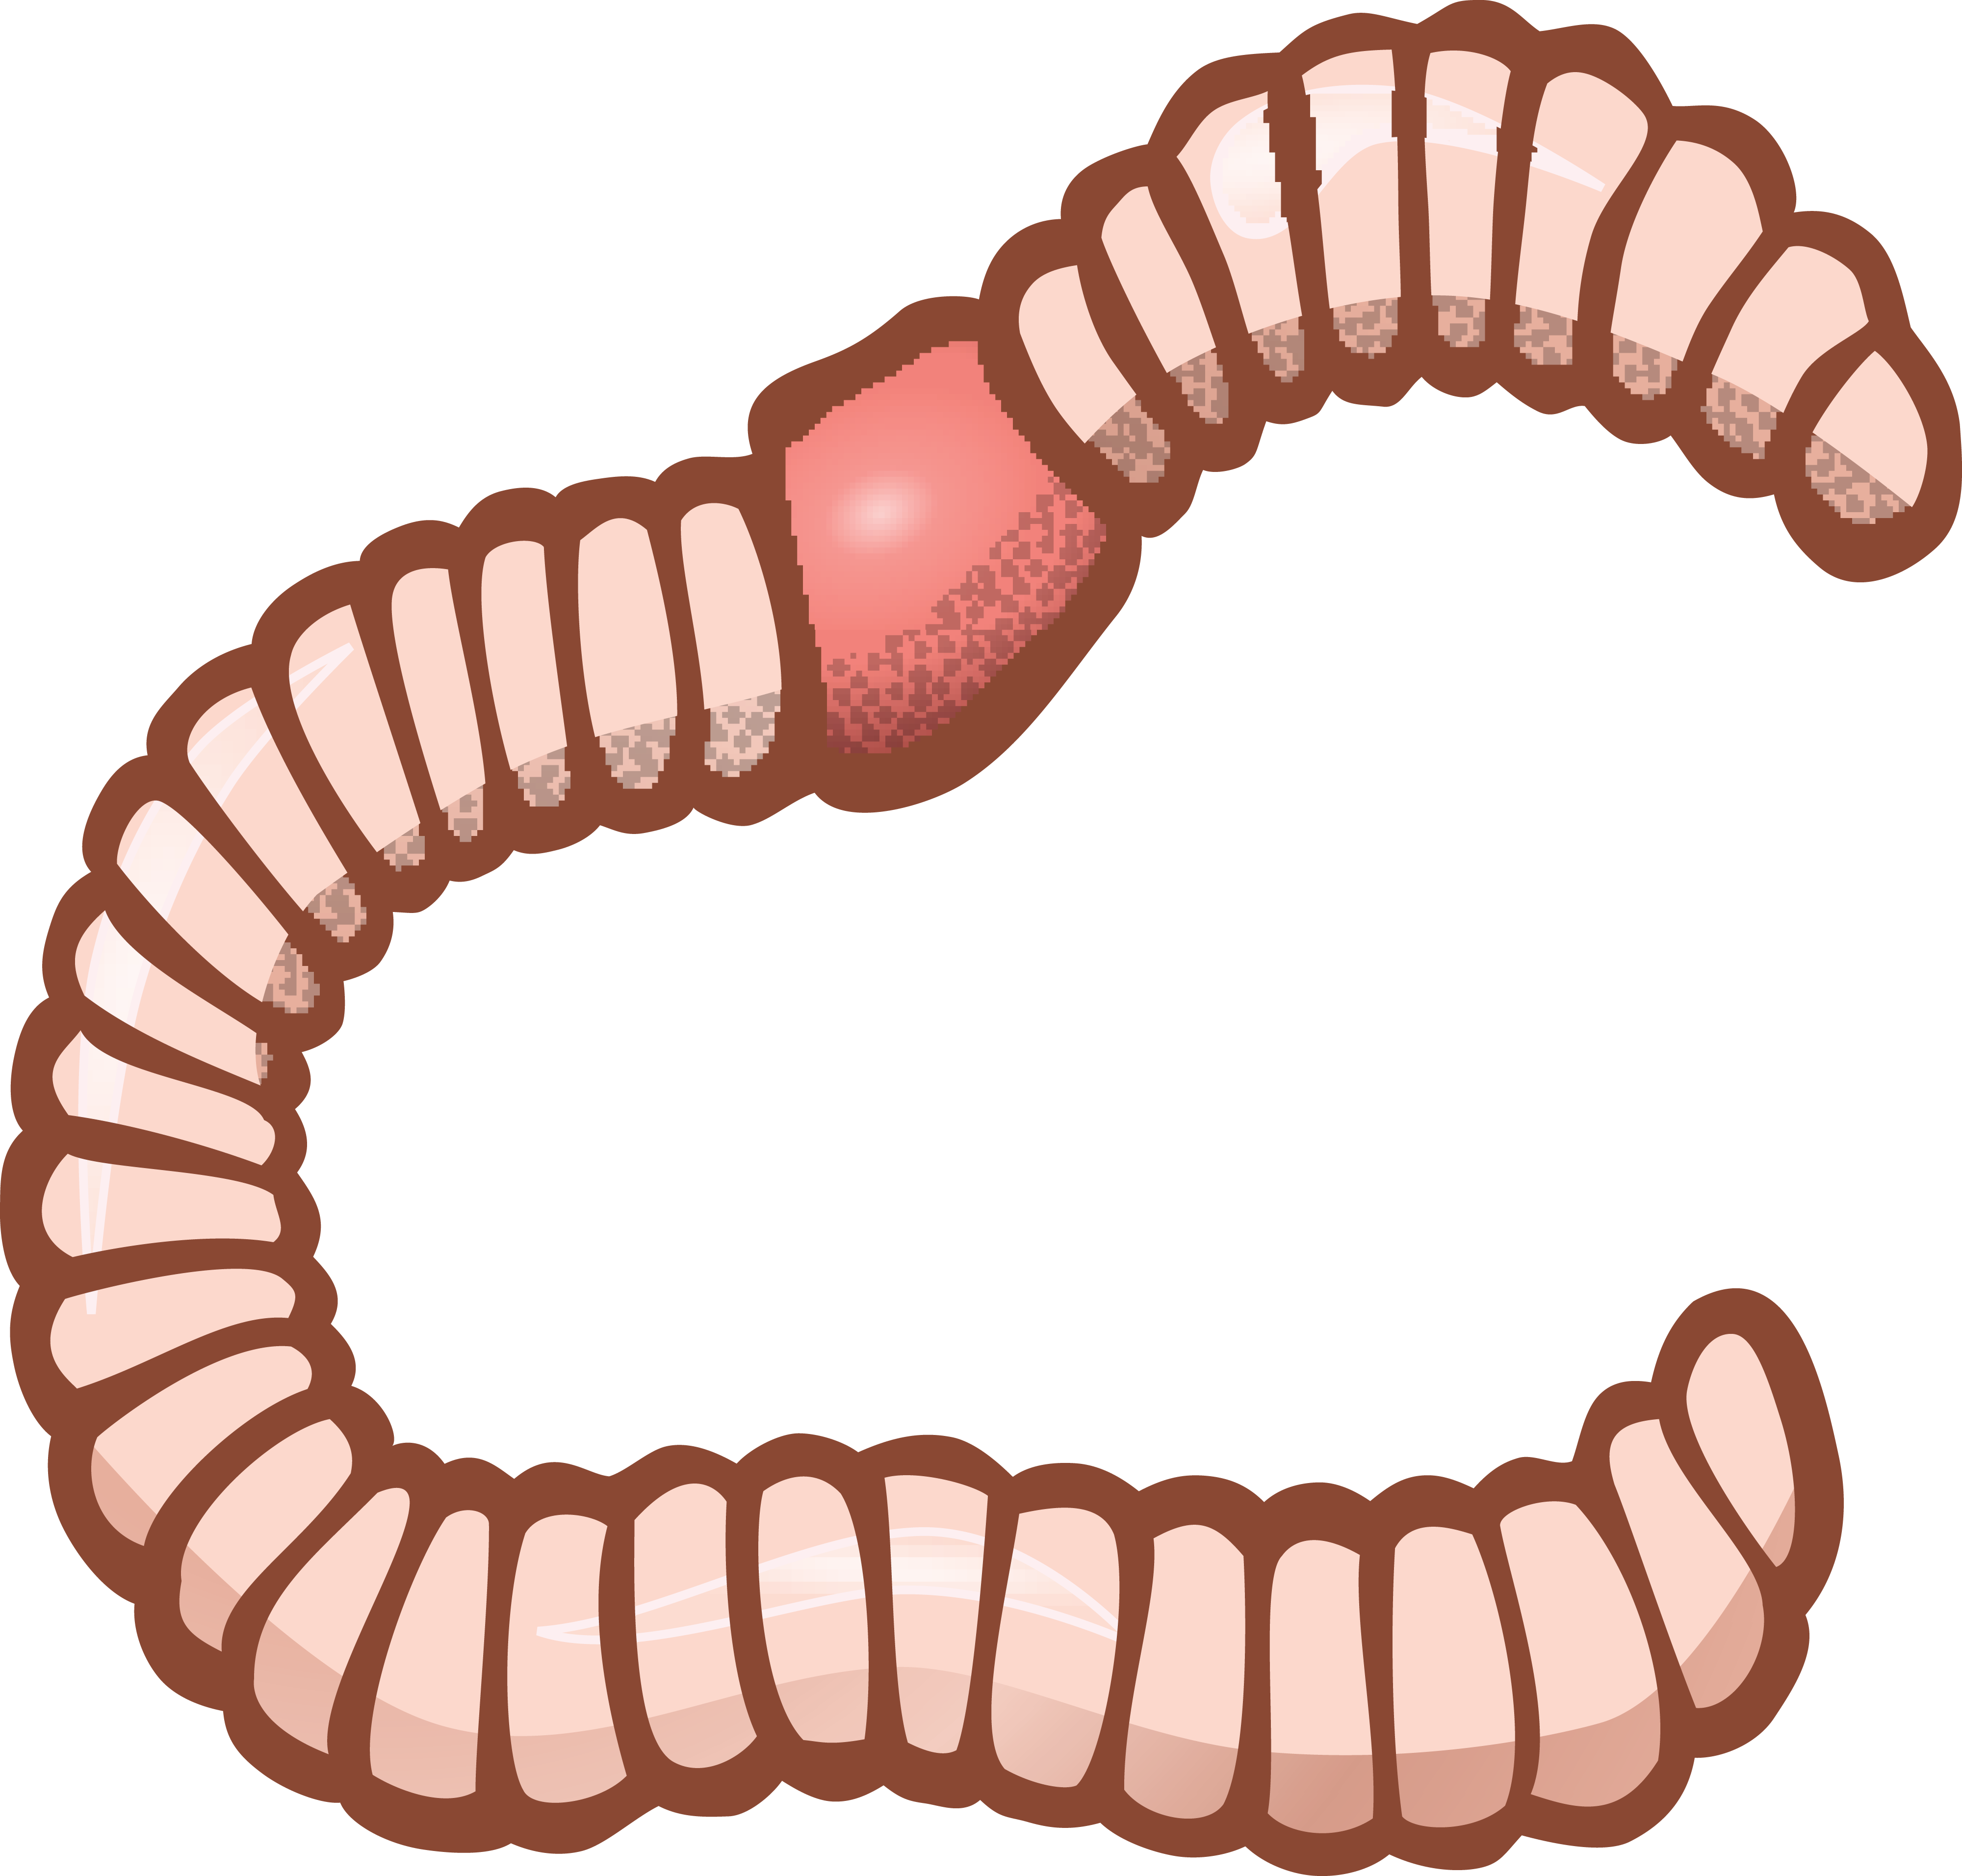 PNG Earthworm-PlusPNG.com-302